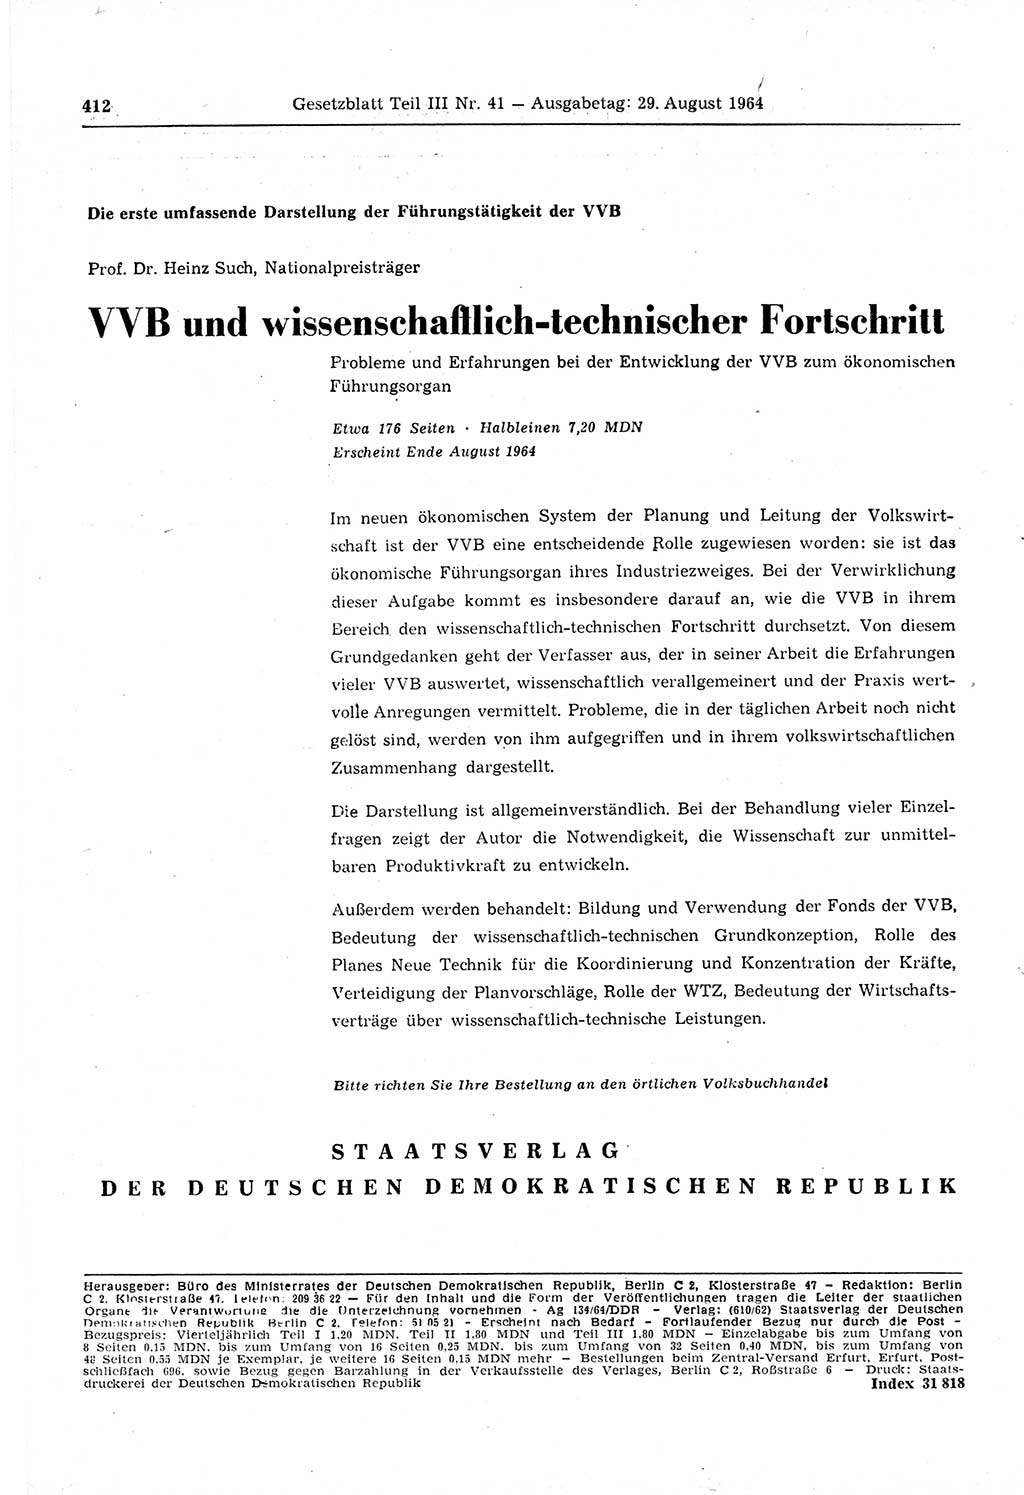 Gesetzblatt (GBl.) der Deutschen Demokratischen Republik (DDR) Teil ⅠⅠⅠ 1964, Seite 412 (GBl. DDR ⅠⅠⅠ 1964, S. 412)